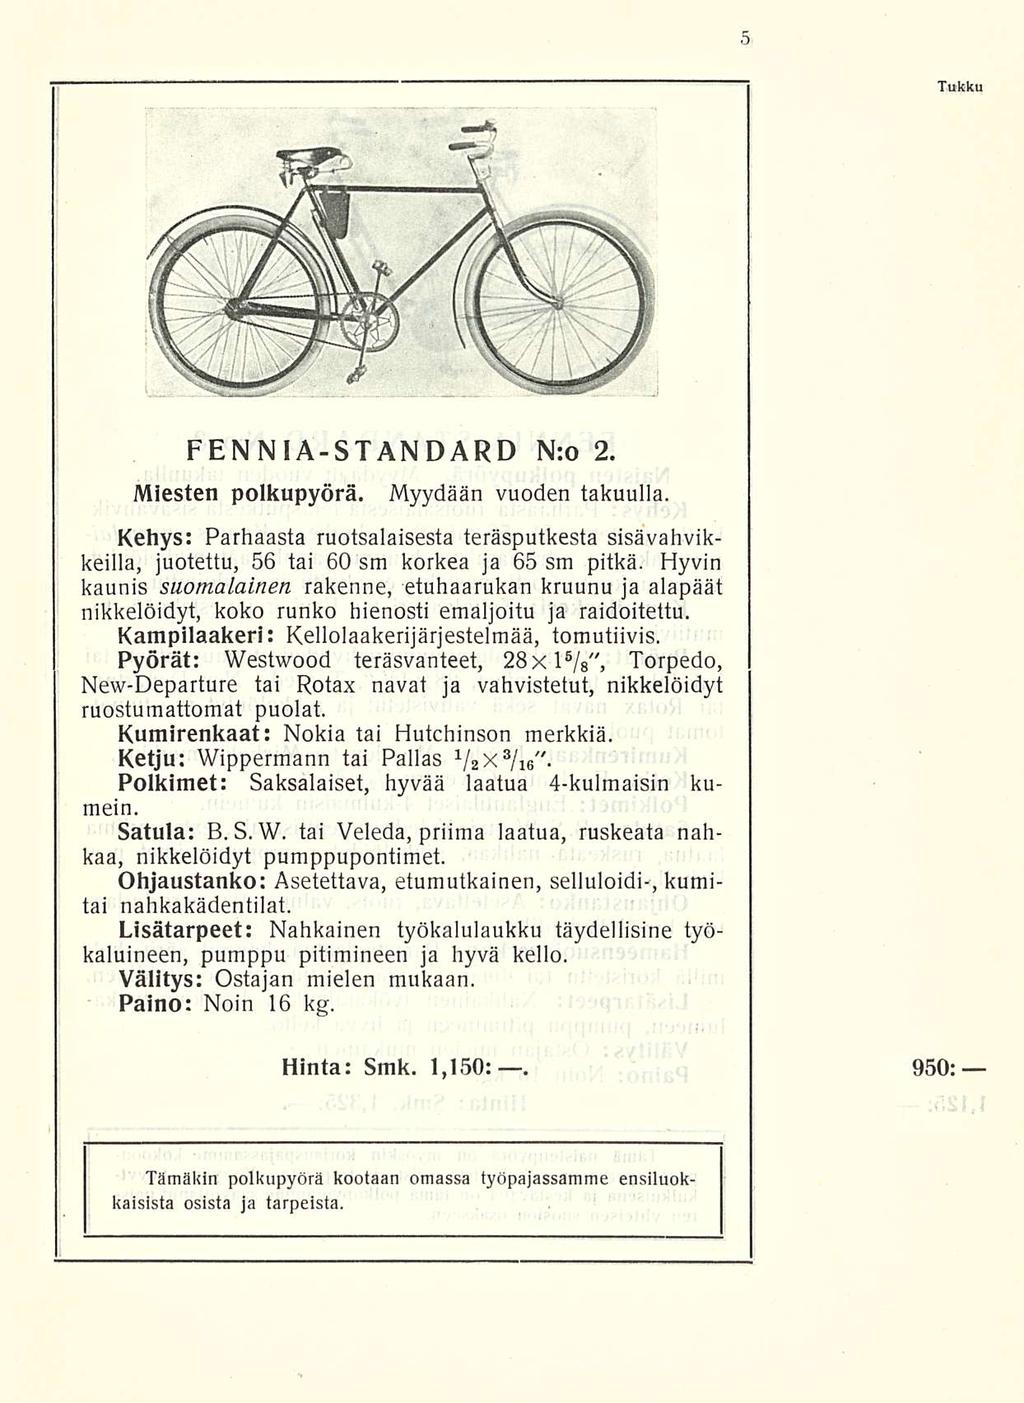 Tukku FENNIA-STANDARD N:o 2. Miesten polkupyörä. Myydään vuoden takuulla. Kehys: Parhaasta ruotsalaisesta teräsputkesta sisävahvikkeilla, juotettu, 56 tai 60 sm korkea ja 65 sm pitkä.